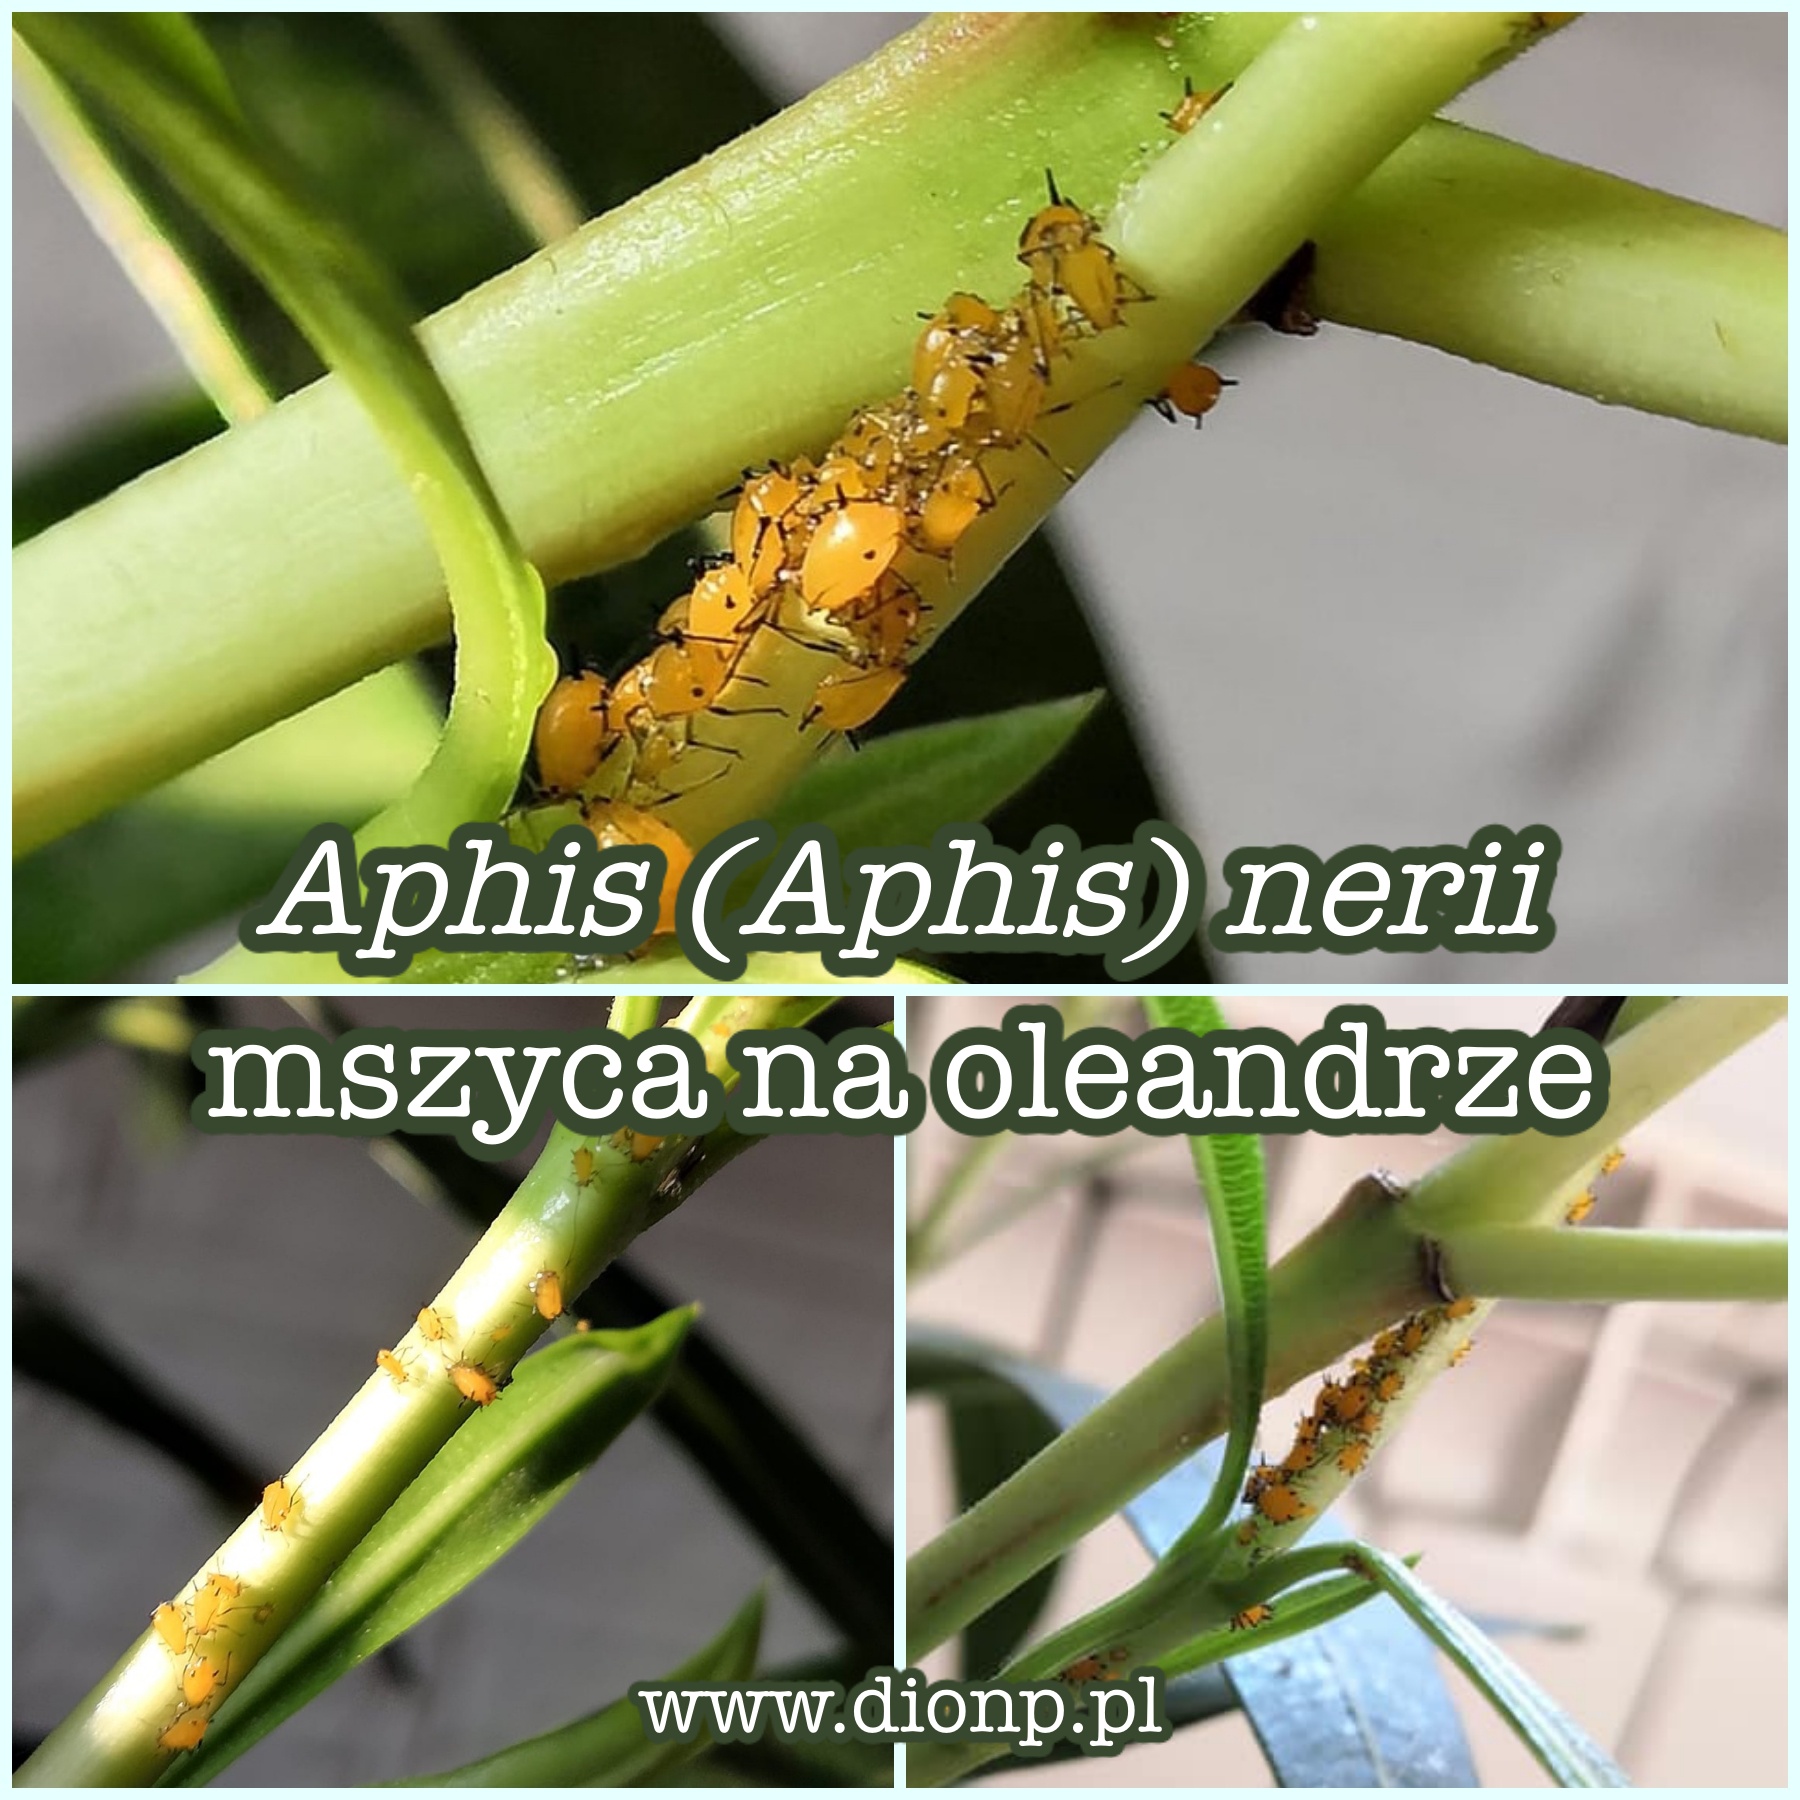 Żółta mszyca na oleandrze – mszyca oleandrowa (Aphis (Aphis) nerii)